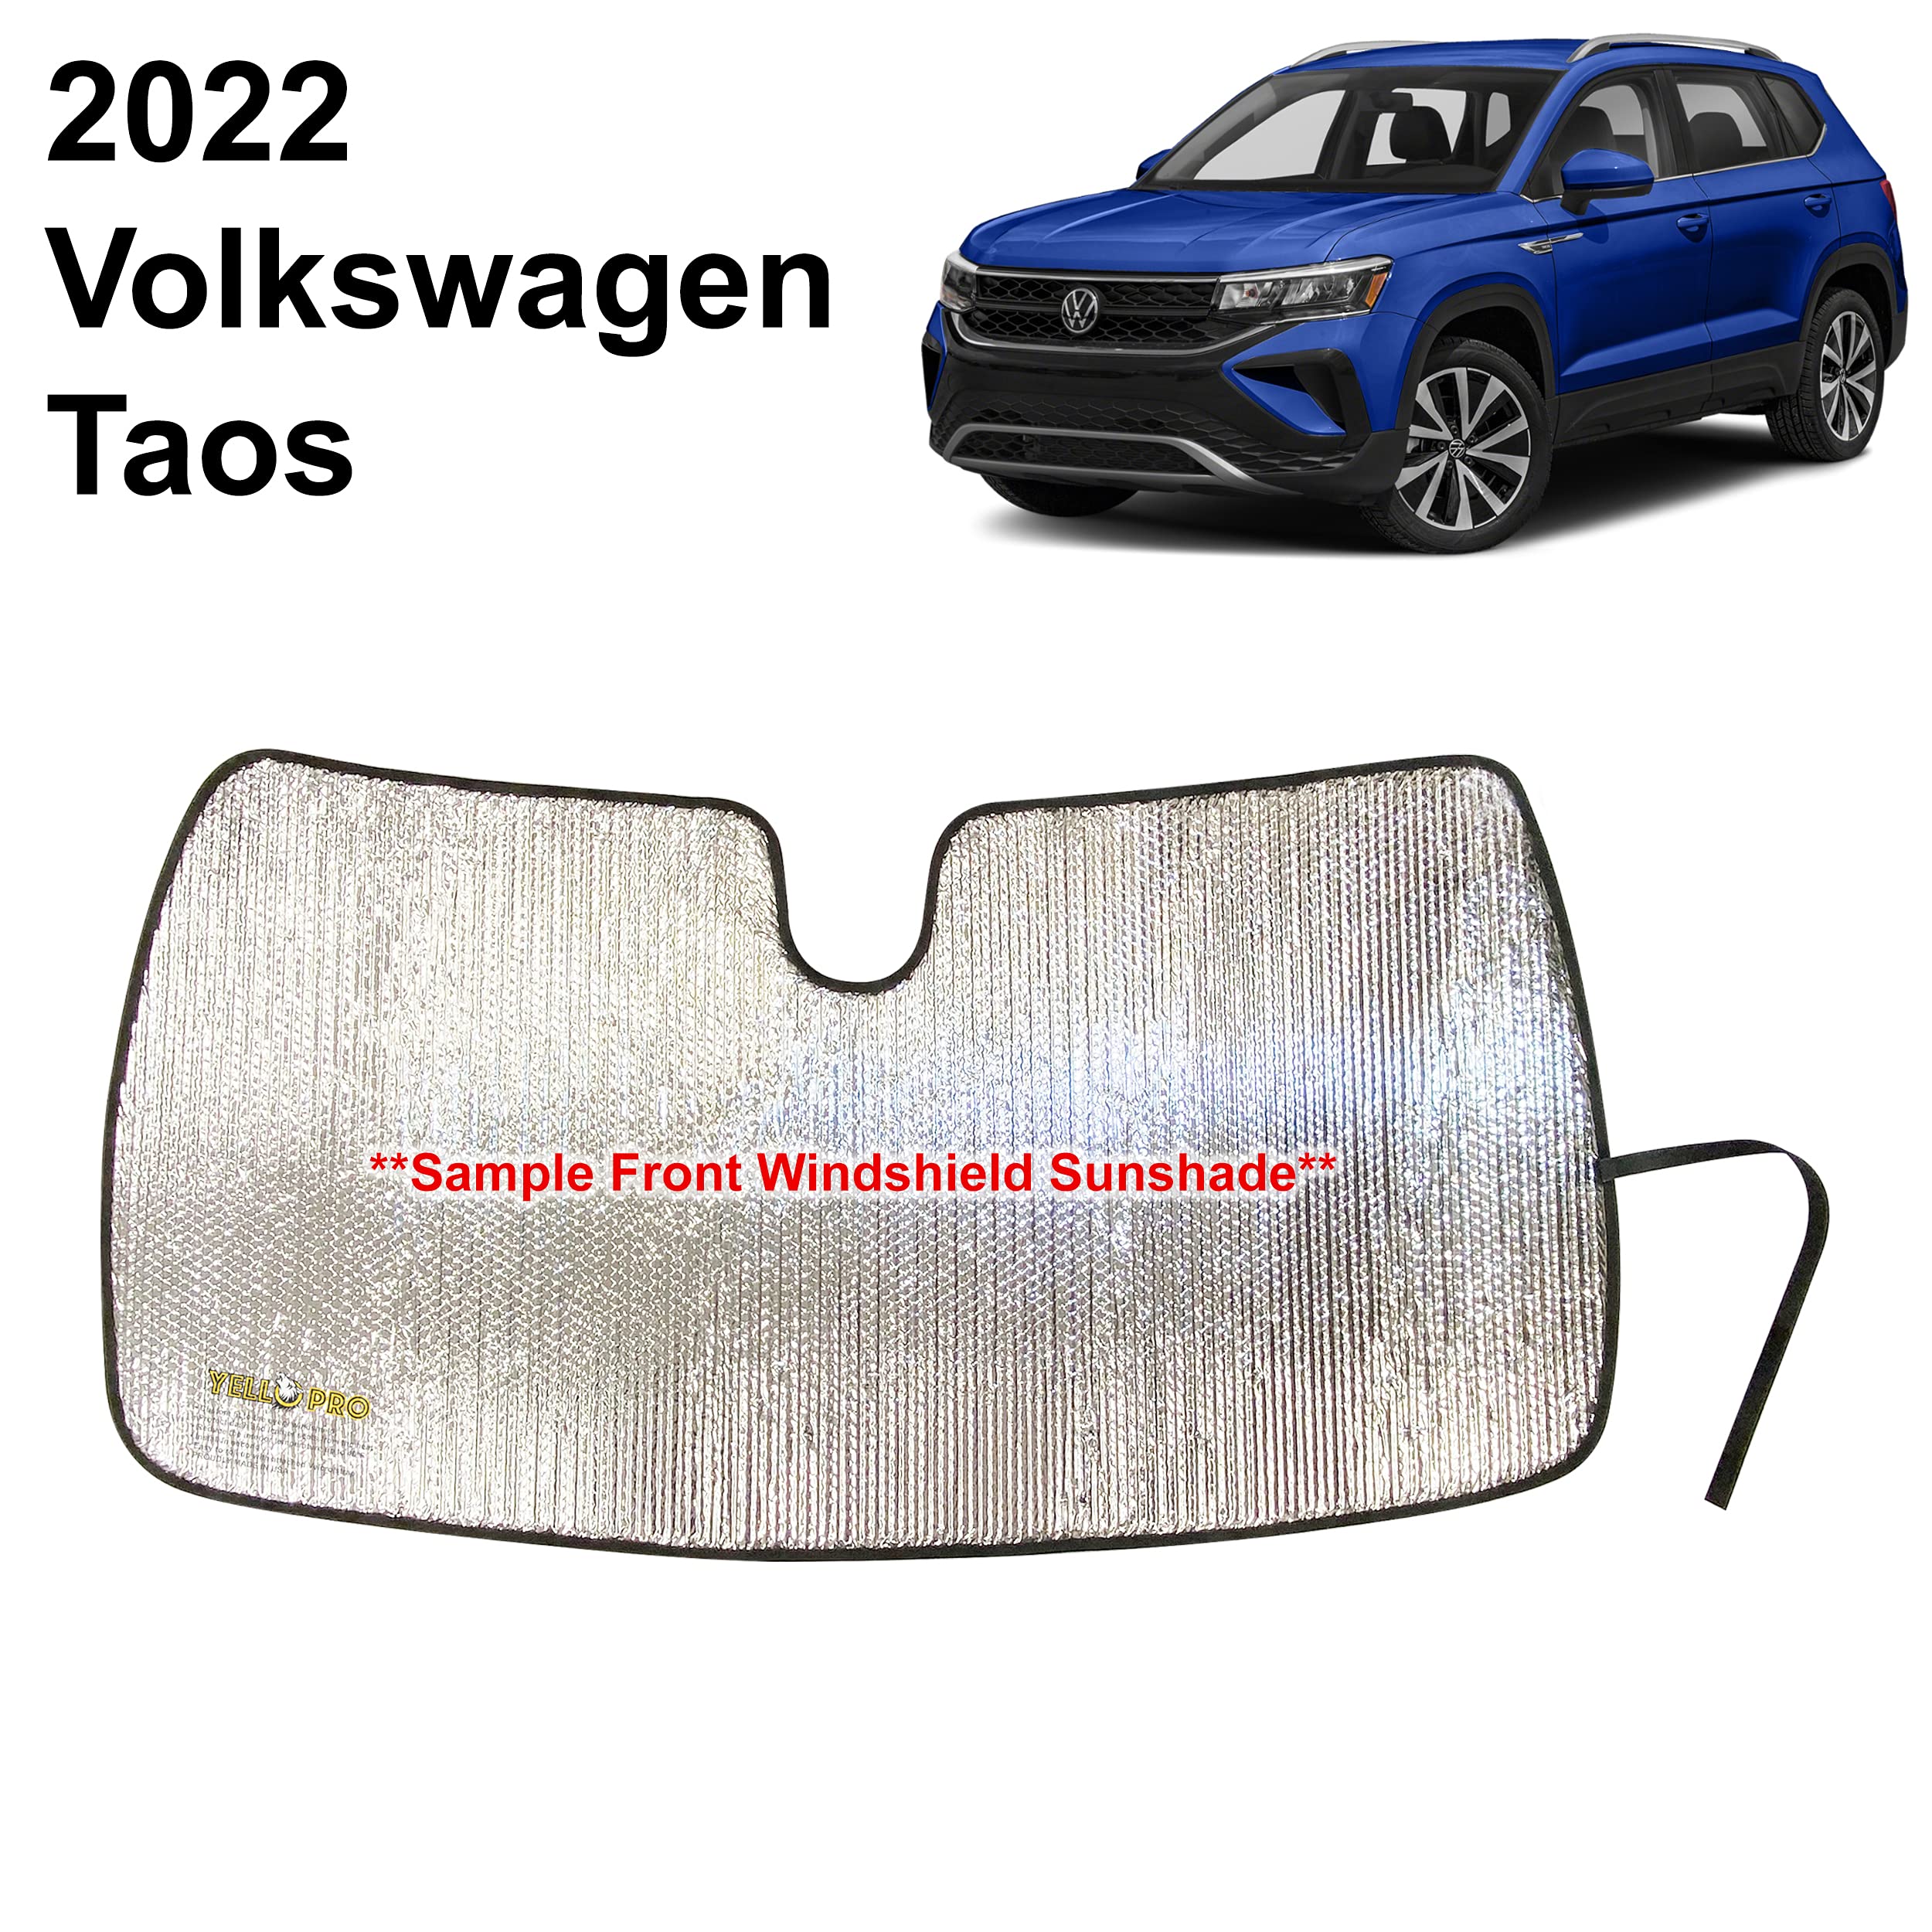 Volkswagen Taos Wallpapers